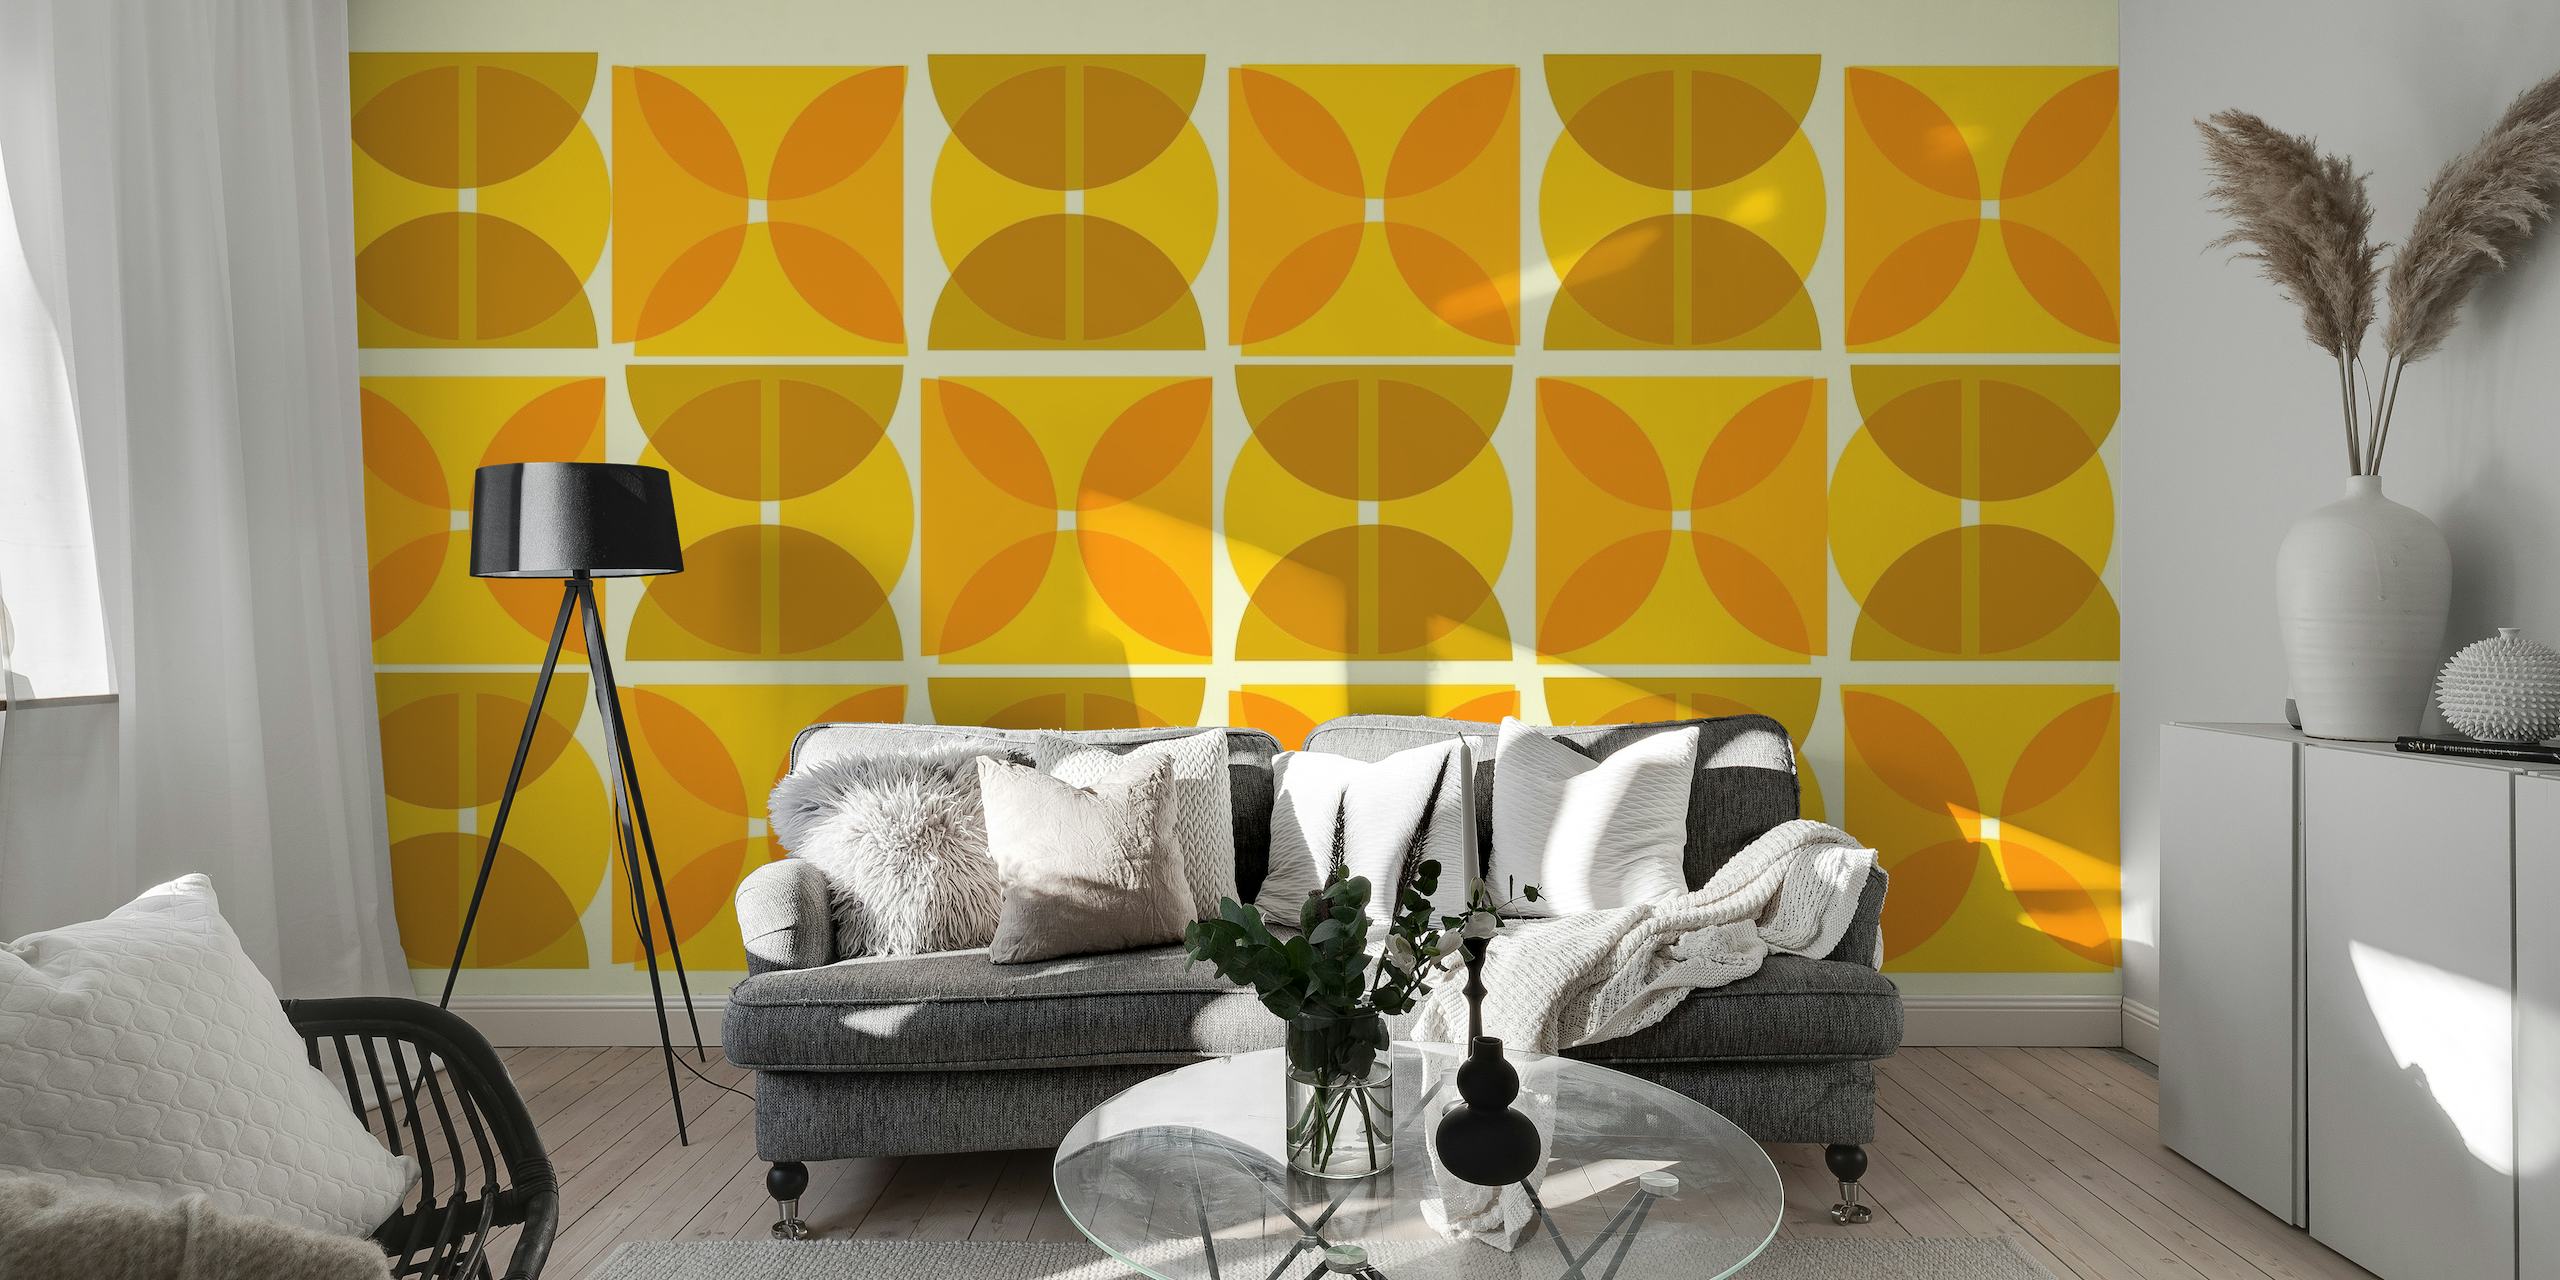 Fotomural de inspiración Bauhaus con formas geométricas abstractas en tonos amarillos y marrones